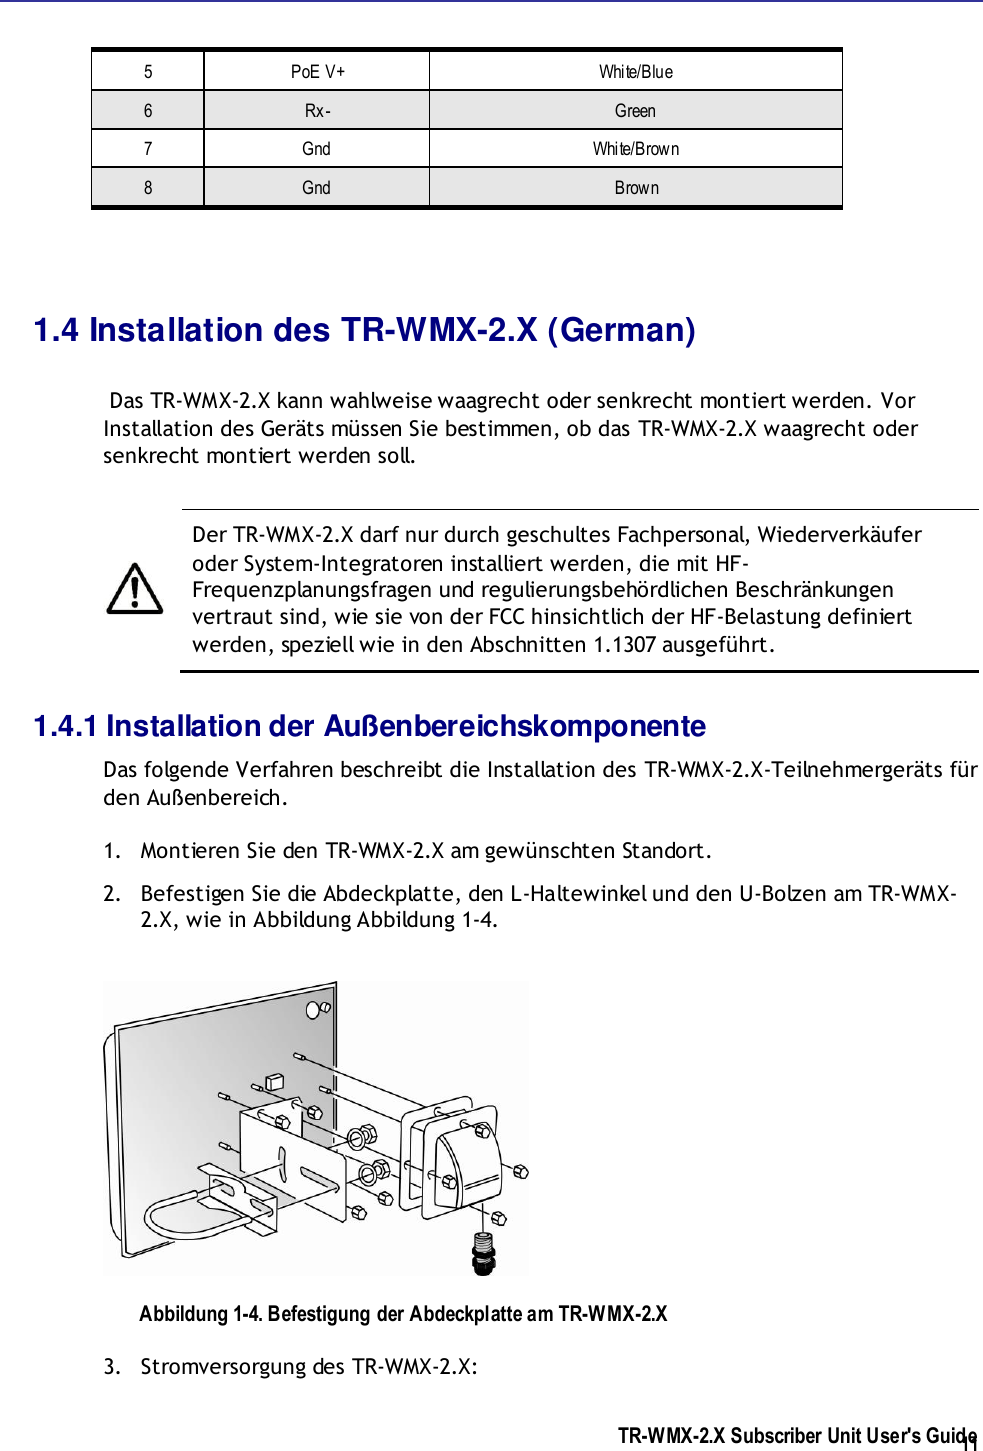  TR-WMX-2.X Subscriber Unit User&apos;s Guide  11 5 PoE V+ White/Blue 6 Rx- Green 7 Gnd White/Brown 8 Gnd Brown  1.4 Installation des TR-WMX-2.X (German)   Das TR-WMX-2.X kann wahlweise waagrecht oder senkrecht montiert werden. Vor Installation des Geräts müssen Sie bestimmen, ob das TR-WMX-2.X waagrecht oder senkrecht montiert werden soll.    Der TR-WMX-2.X darf nur durch geschultes Fachpersonal, Wiederverkäufer oder System-Integratoren installiert werden, die mit HF-Frequenzplanungsfragen und regulierungsbehördlichen Beschränkungen vertraut sind, wie sie von der FCC hinsichtlich der HF-Belastung definiert werden, speziell wie in den Abschnitten 1.1307 ausgeführt. 1.4.1 Installation der Außenbereichskomponente Das folgende Verfahren beschreibt die Installation des TR-WMX-2.X-Teilnehmergeräts für den Außenbereich. 1. Montieren Sie den TR-WMX-2.X am gewünschten Standort. 2. Befestigen Sie die Abdeckplatte, den L-Haltewinkel und den U-Bolzen am TR-WMX-2.X, wie in Abbildung Abbildung 1-4.  Abbildung 1-4. Befestigung der Abdeckplatte am TR-WMX-2.X 3. Stromversorgung des TR-WMX-2.X: 